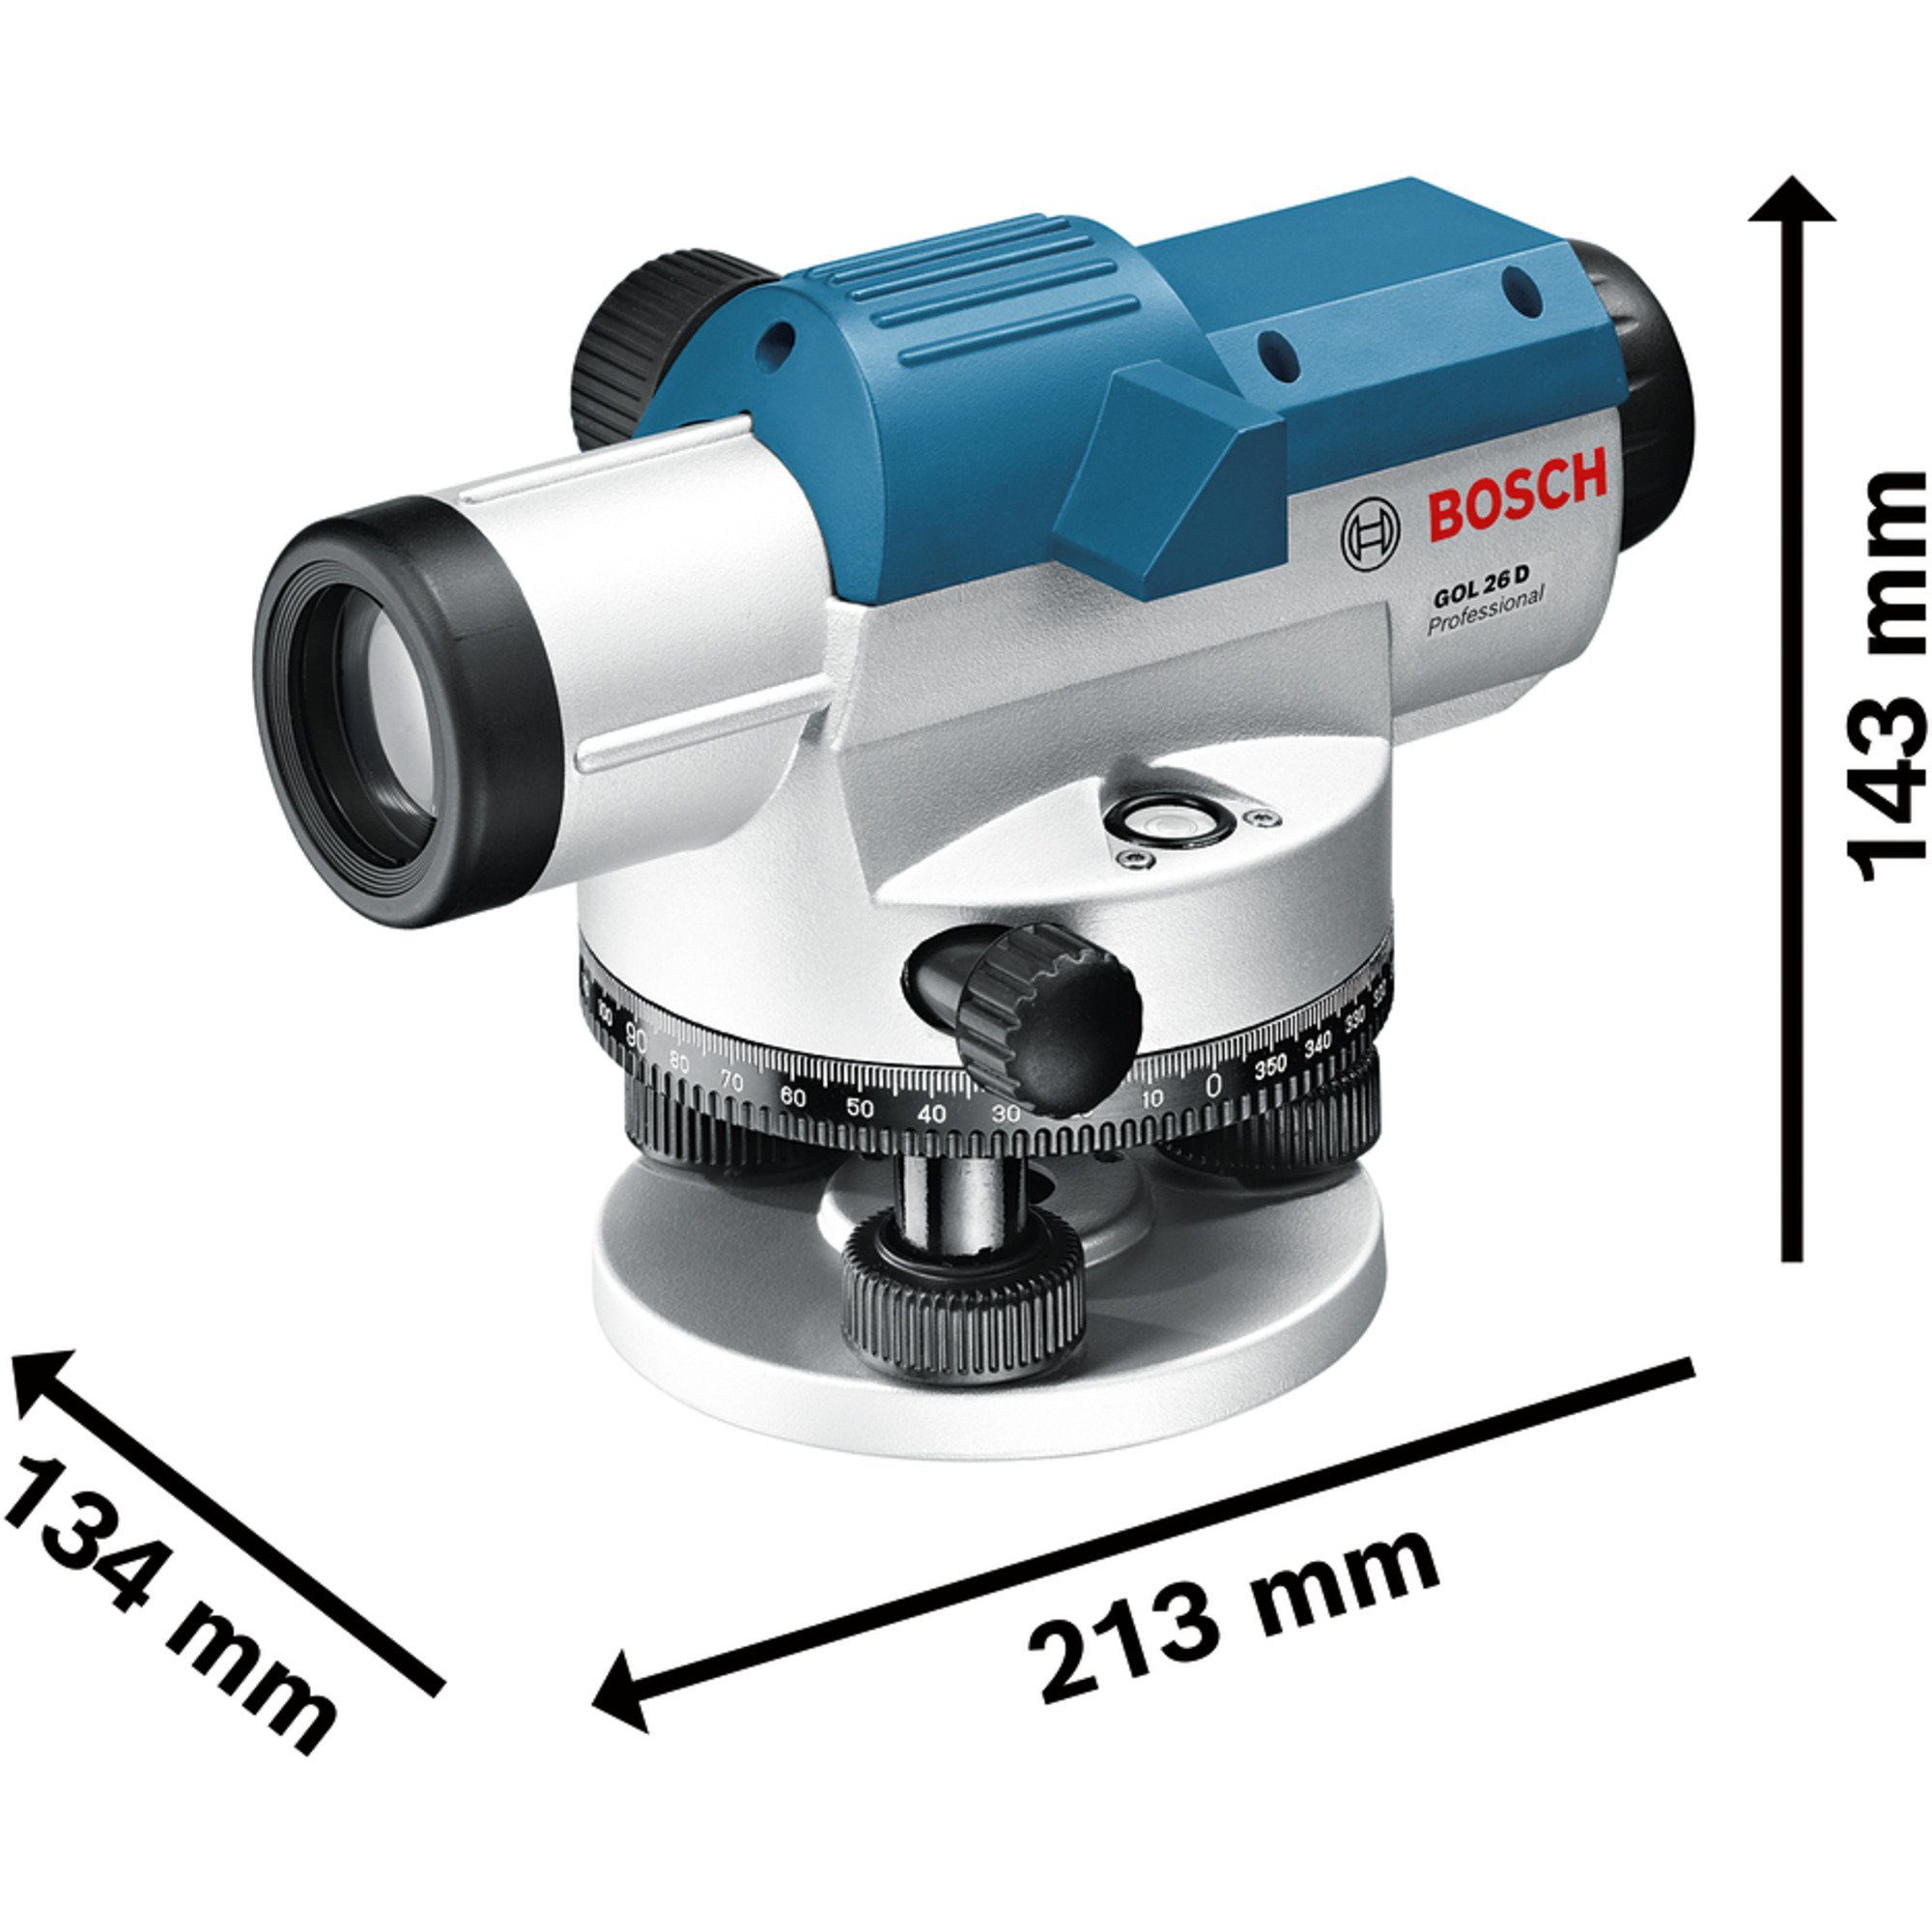 Akku-Multifunktionswerkzeug Bosch Professional GOL BOSCH Optisches 26 Nivelliergerät